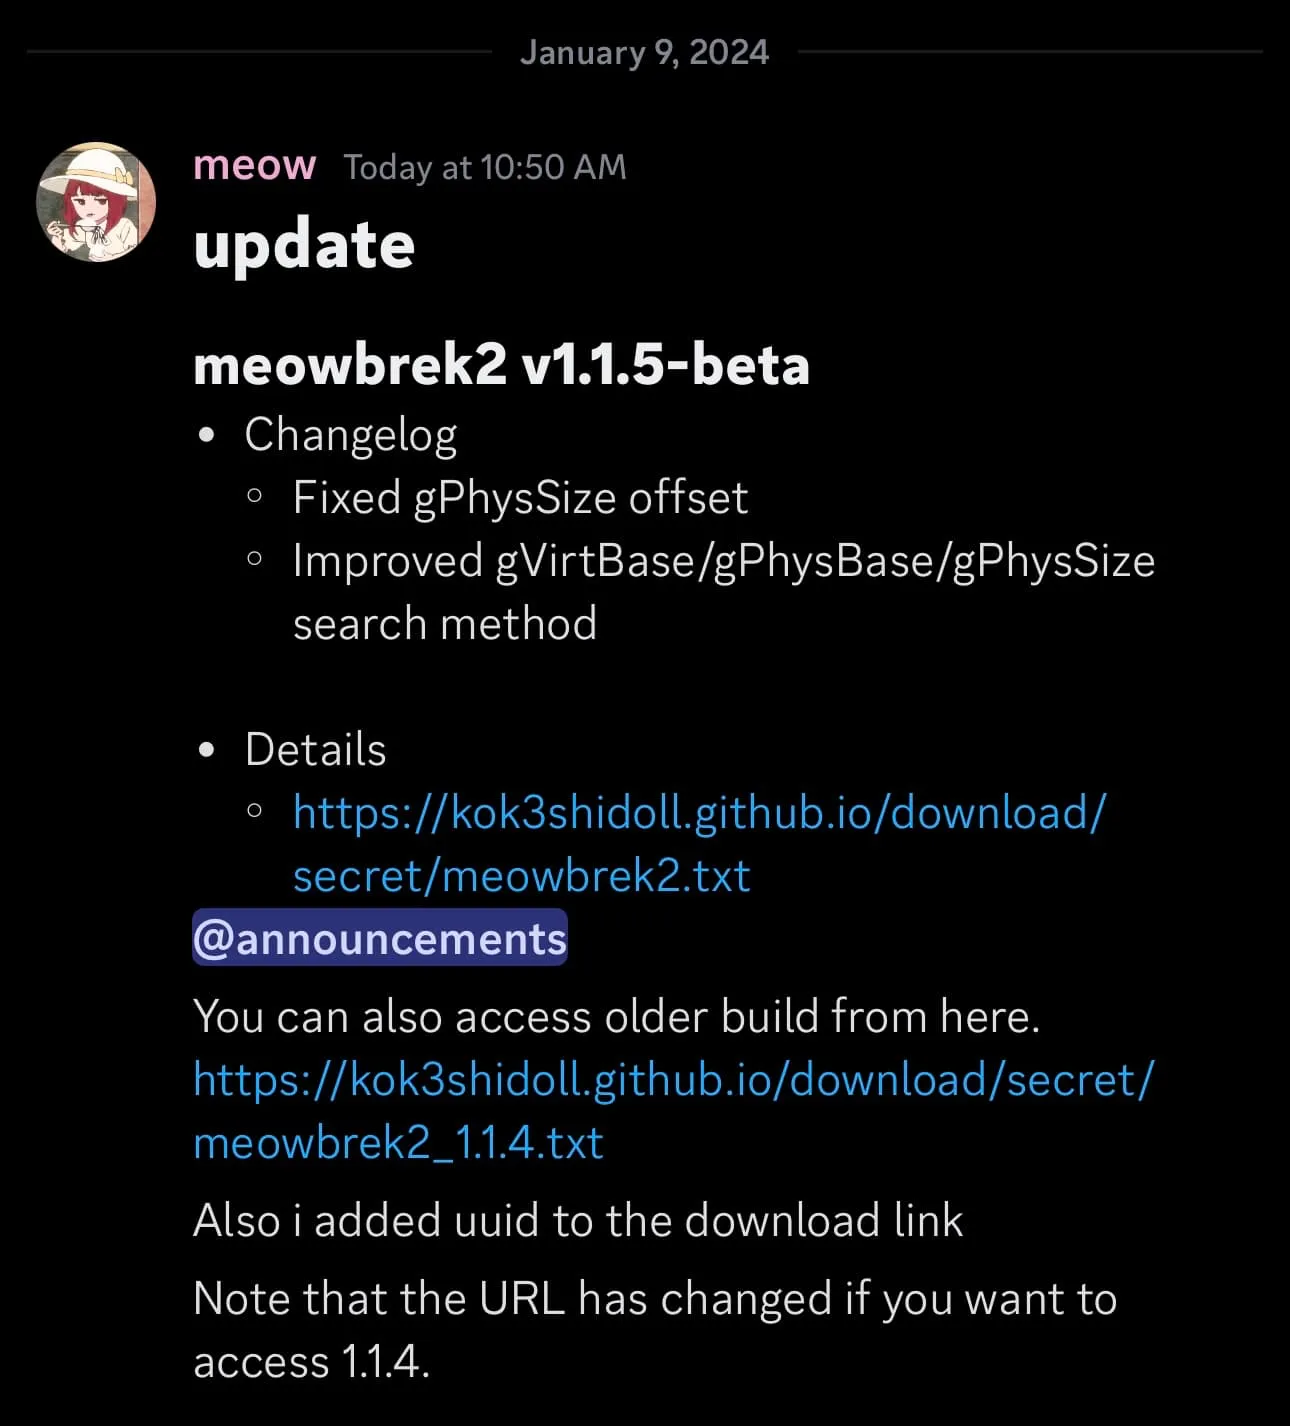 Se anuncia meowbrek2 v1.1.5-beta.